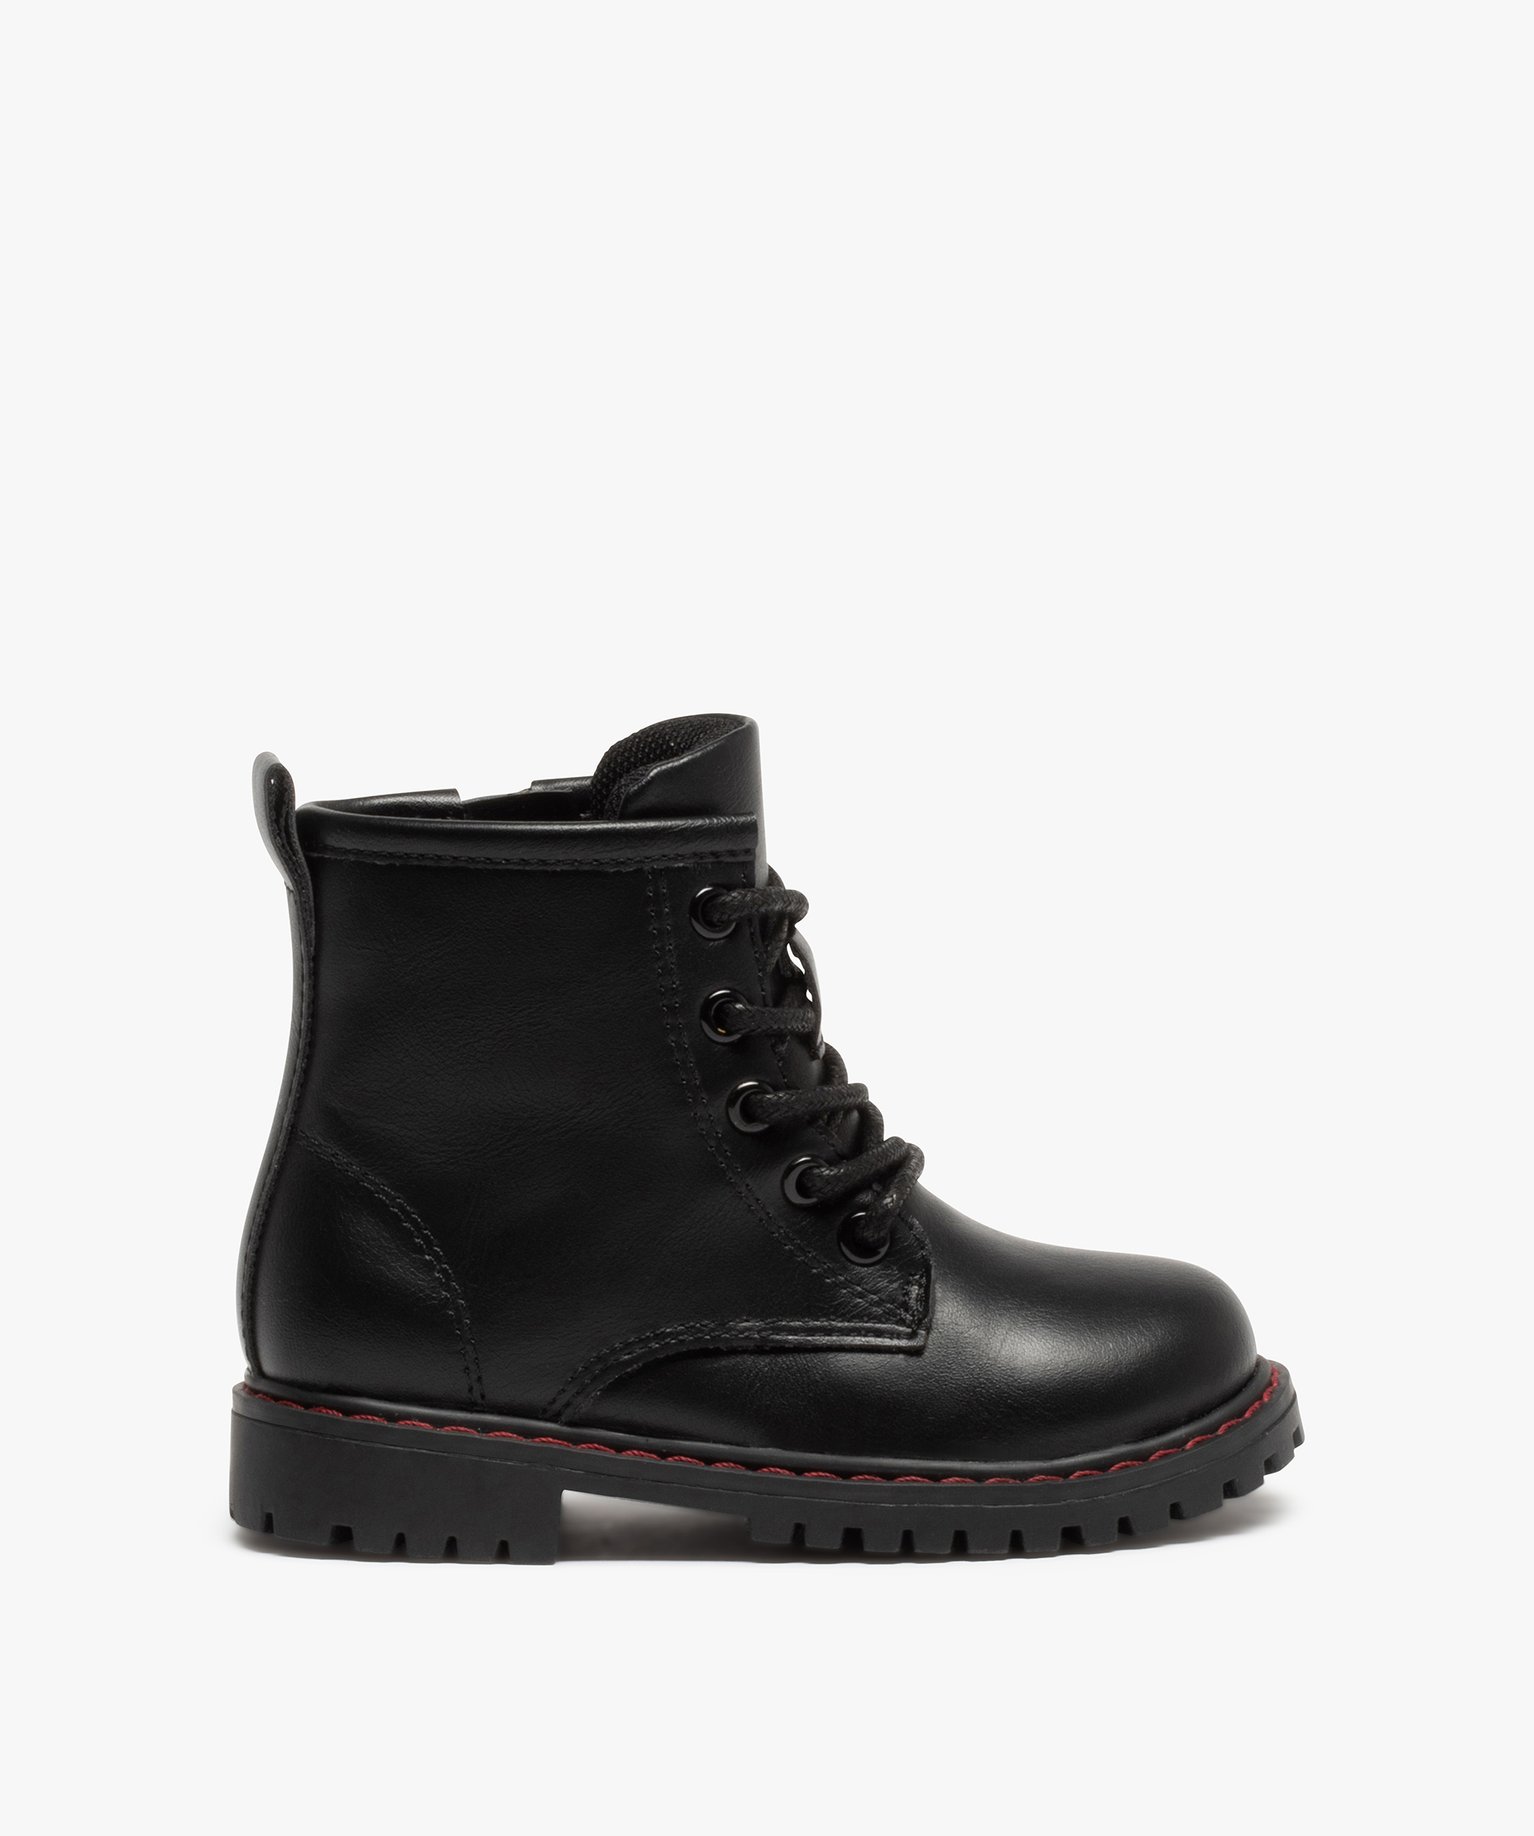 boots bebe garcon unies style rock a semelle crantee noir bottes et chaussures montantes